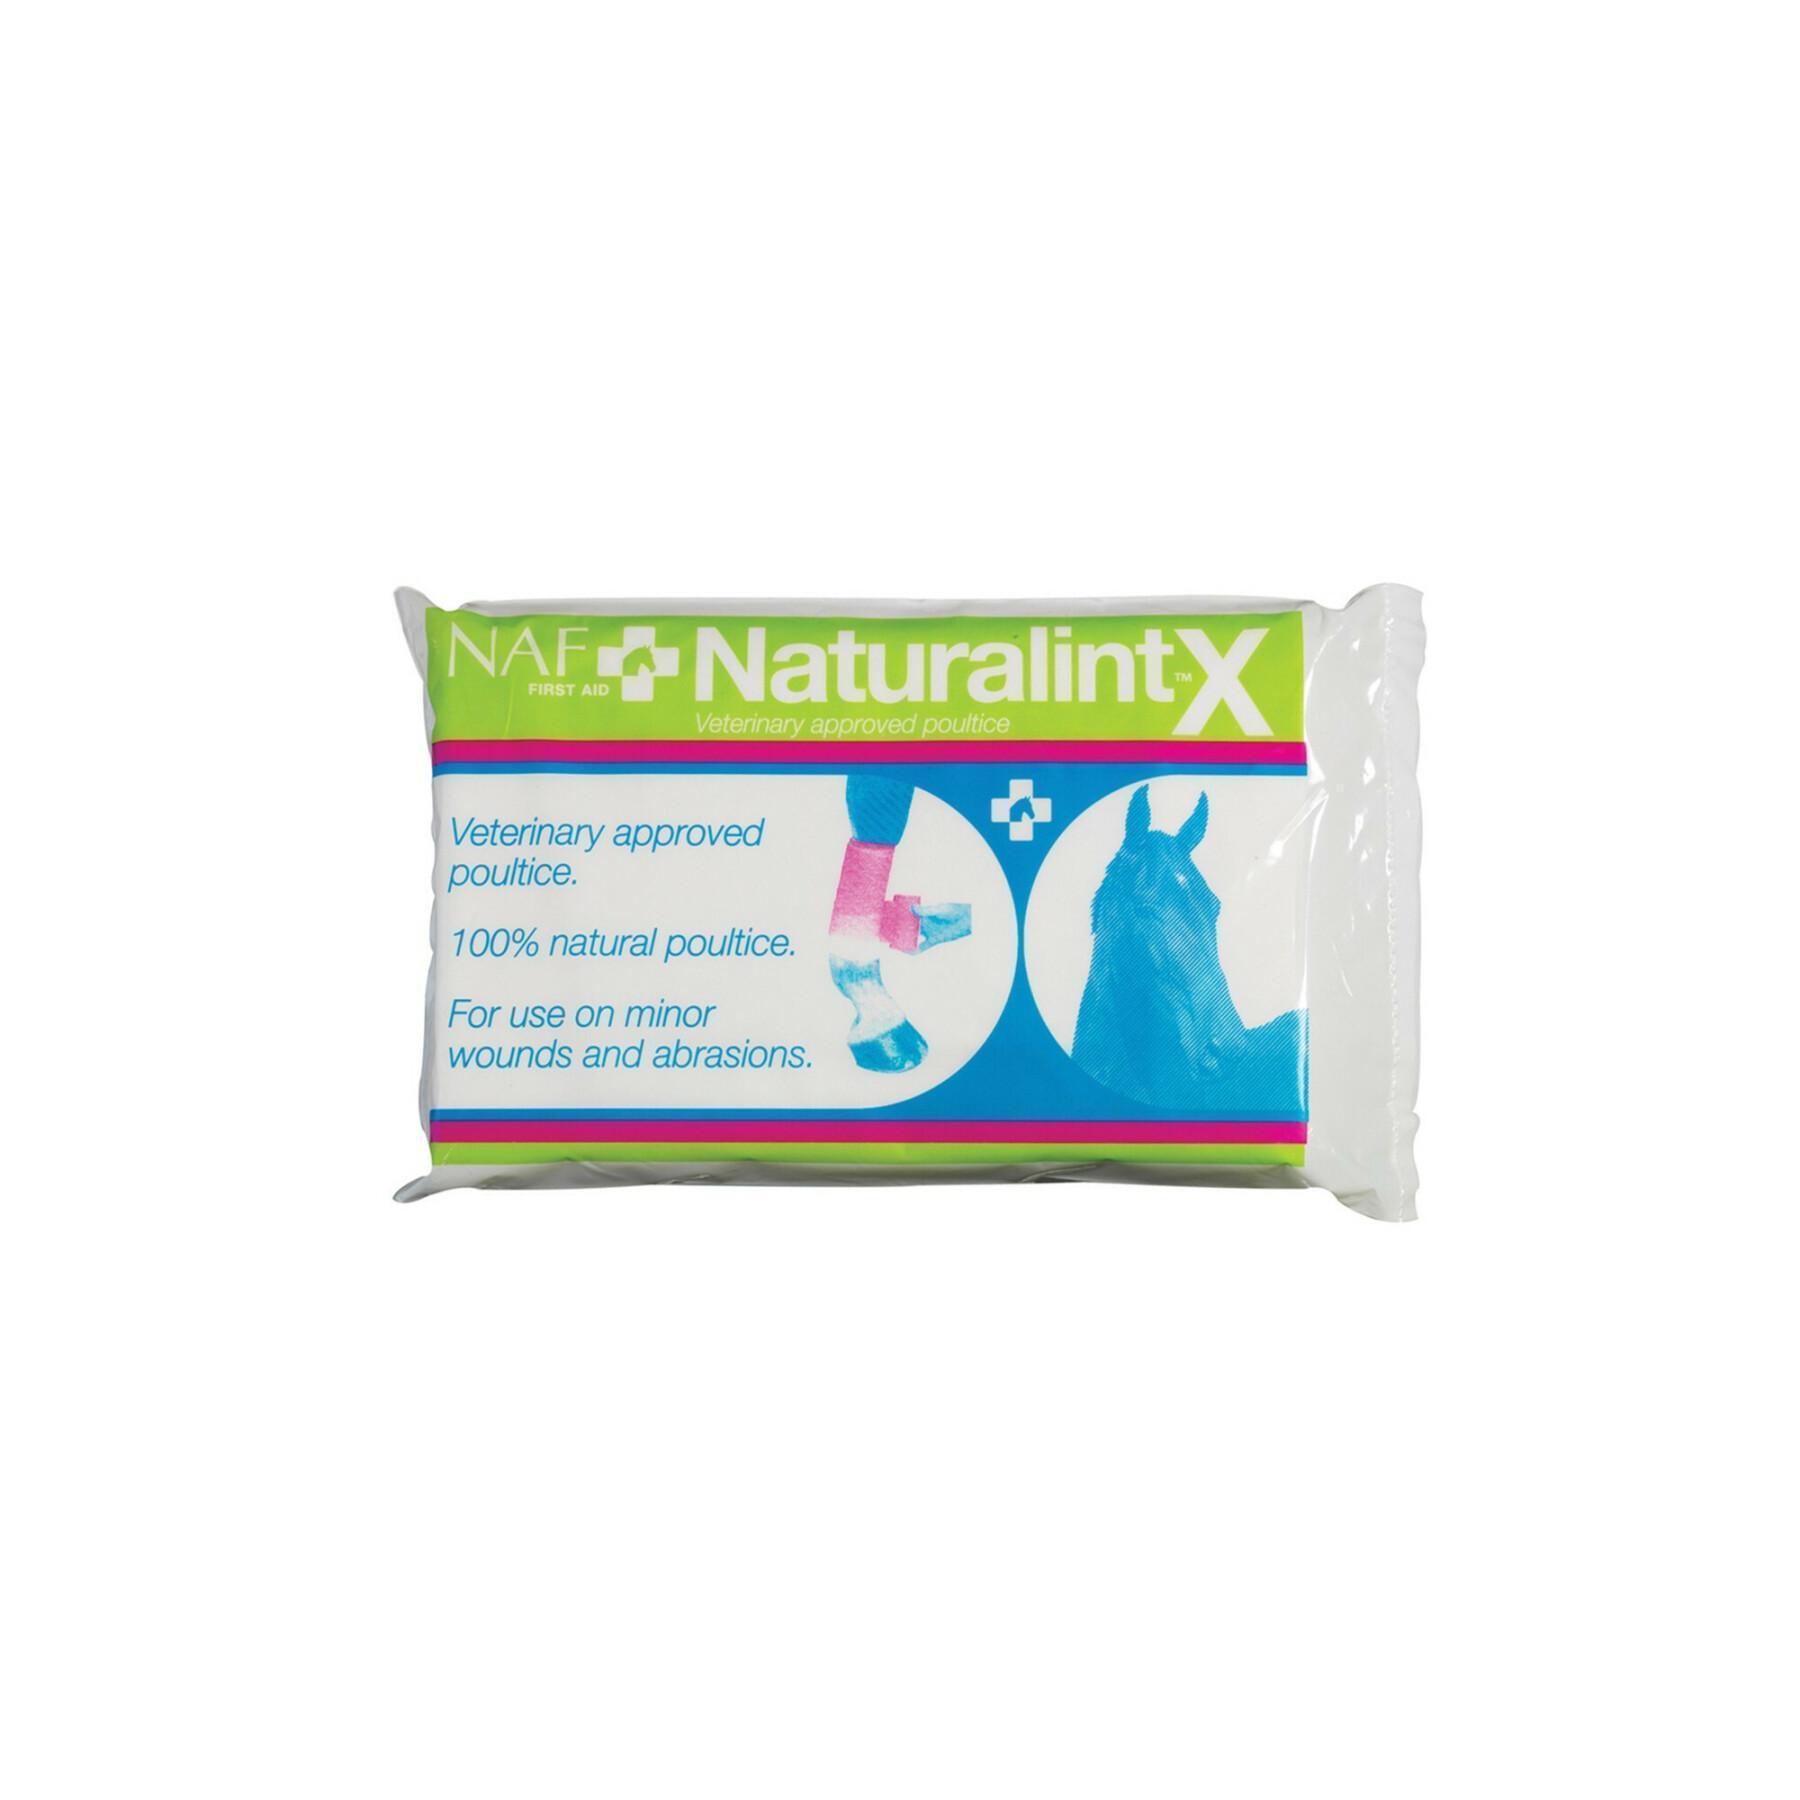 Naturalintx compress NAF